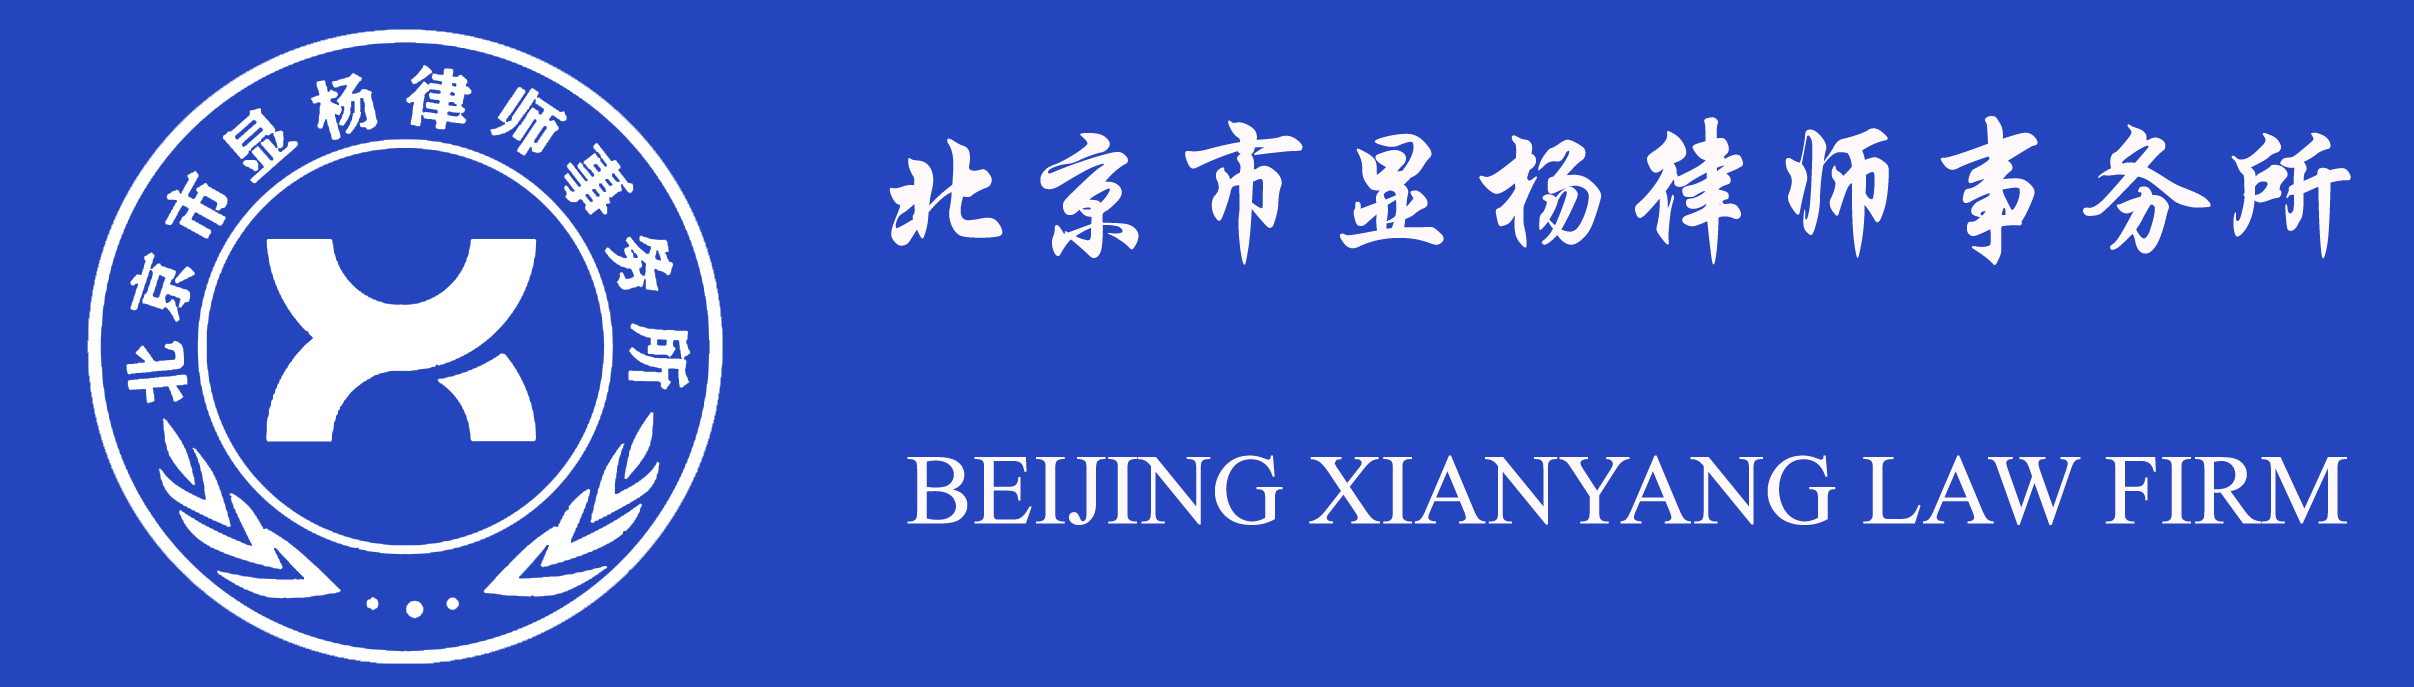 北京市显杨律师事务所